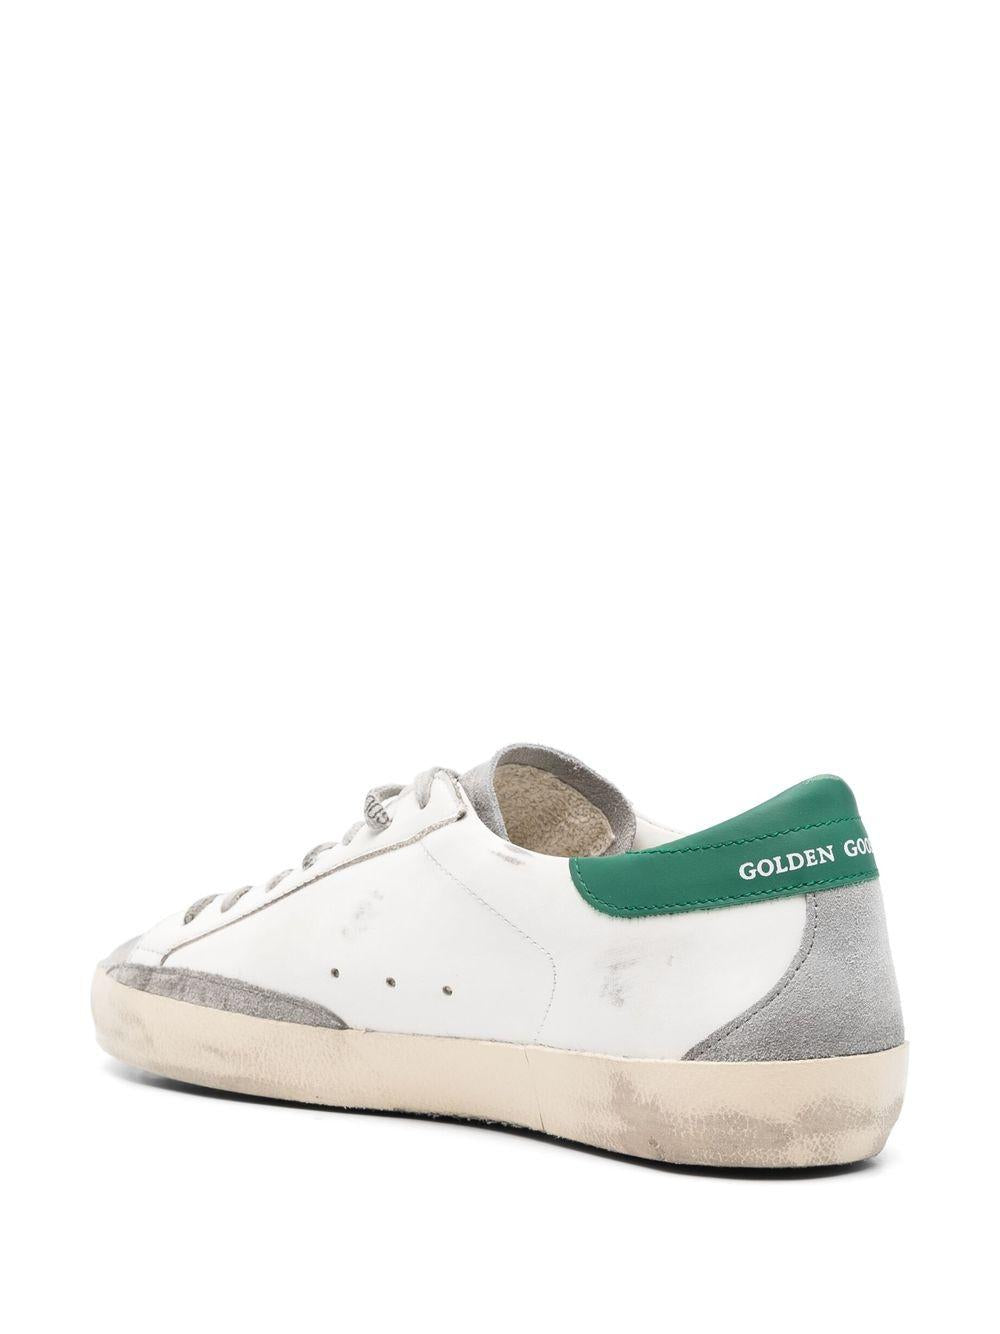 أحذية رياضية رجالية بنسيج أبيض وأخضر من الأعلى